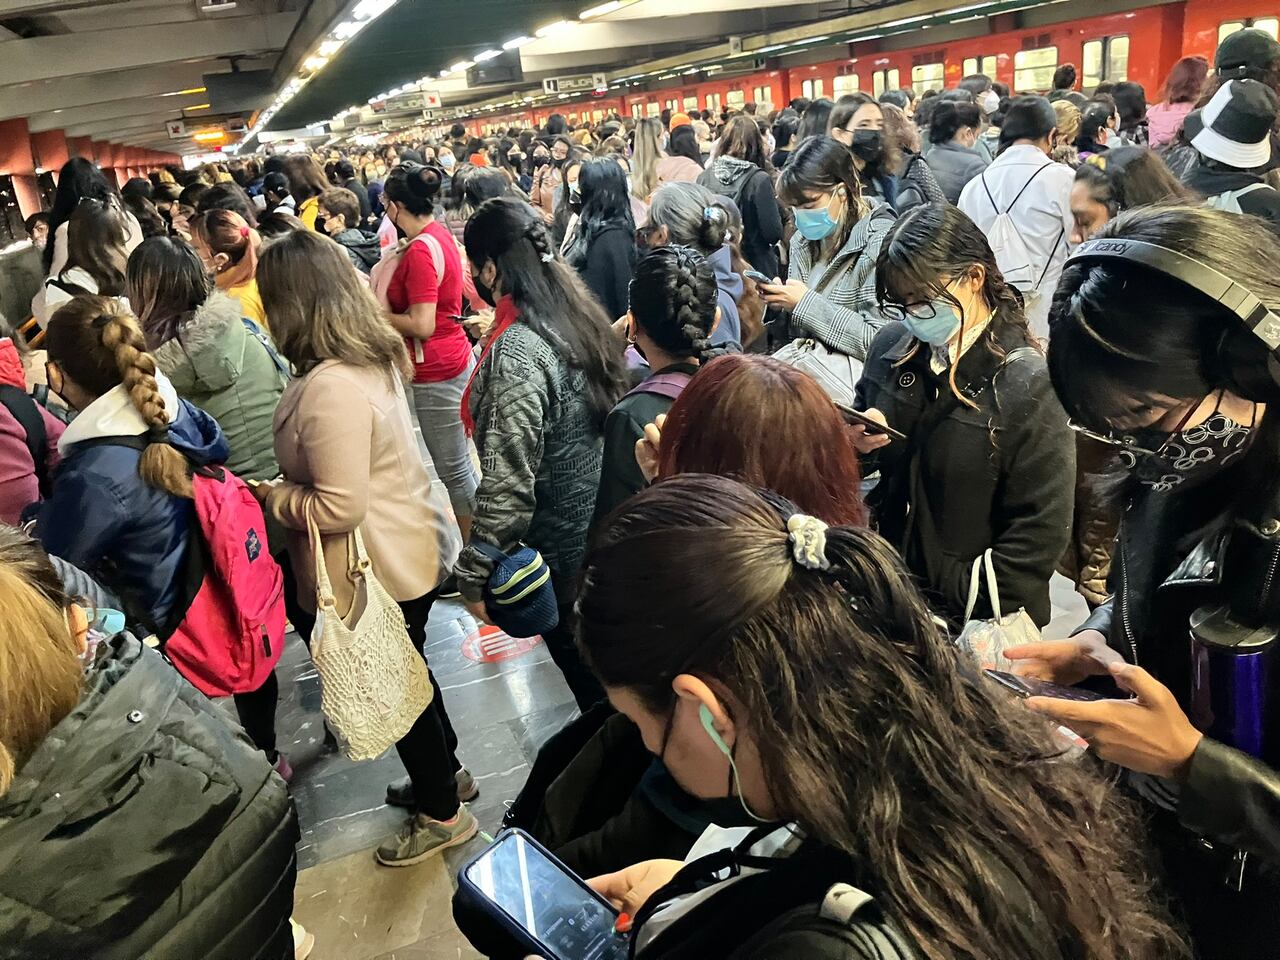 La periodista @nicteGF en su cuenta de Twitter, publicó una foto de la congestión que se registra en una de las estaciones del metro de Ciudad de México.